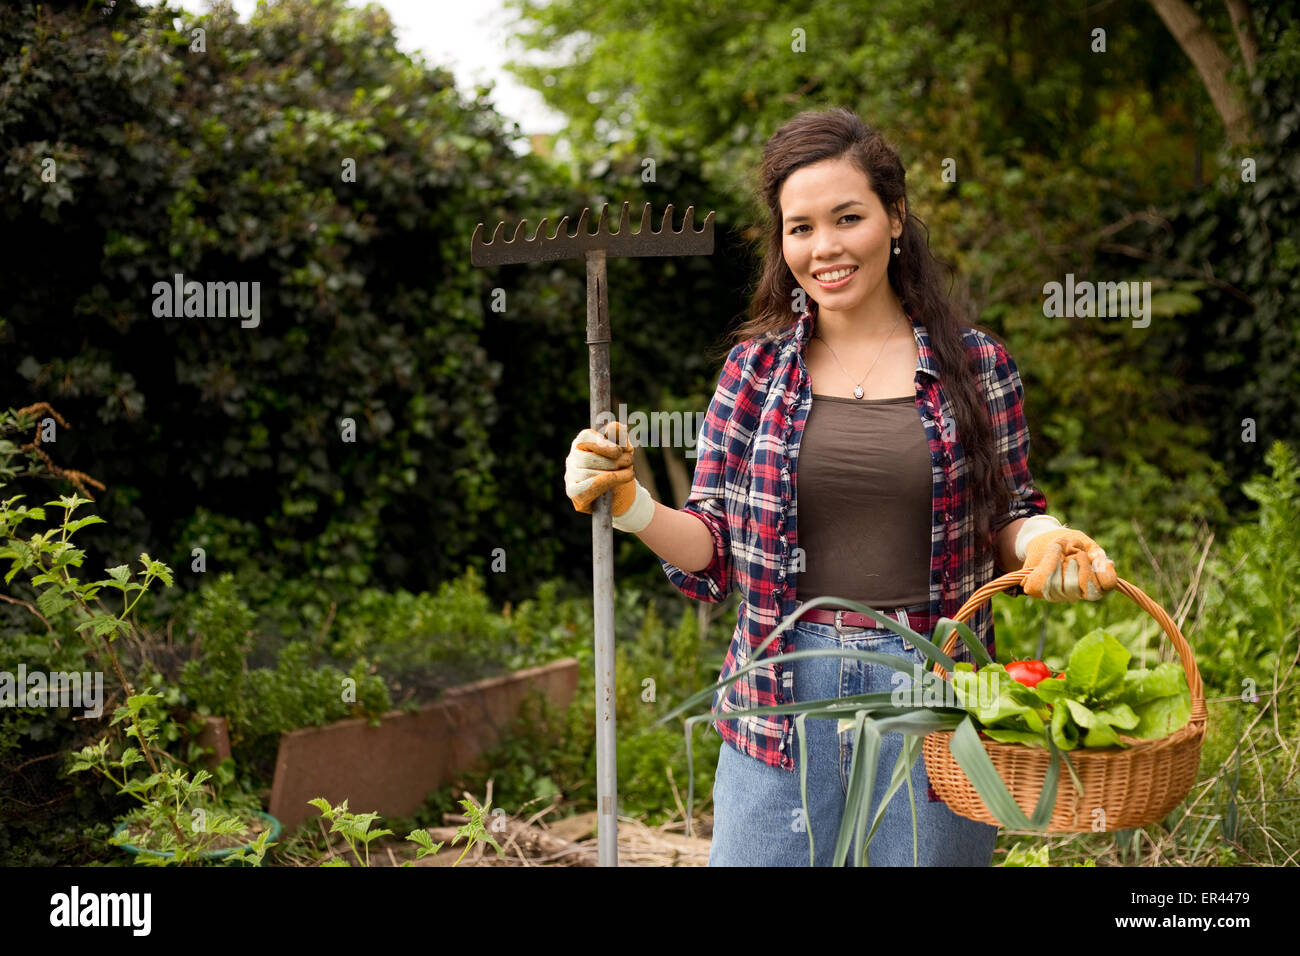 junge Frau im Garten hält einen Korb mit frischem Gemüse und einer Harke Stockfoto